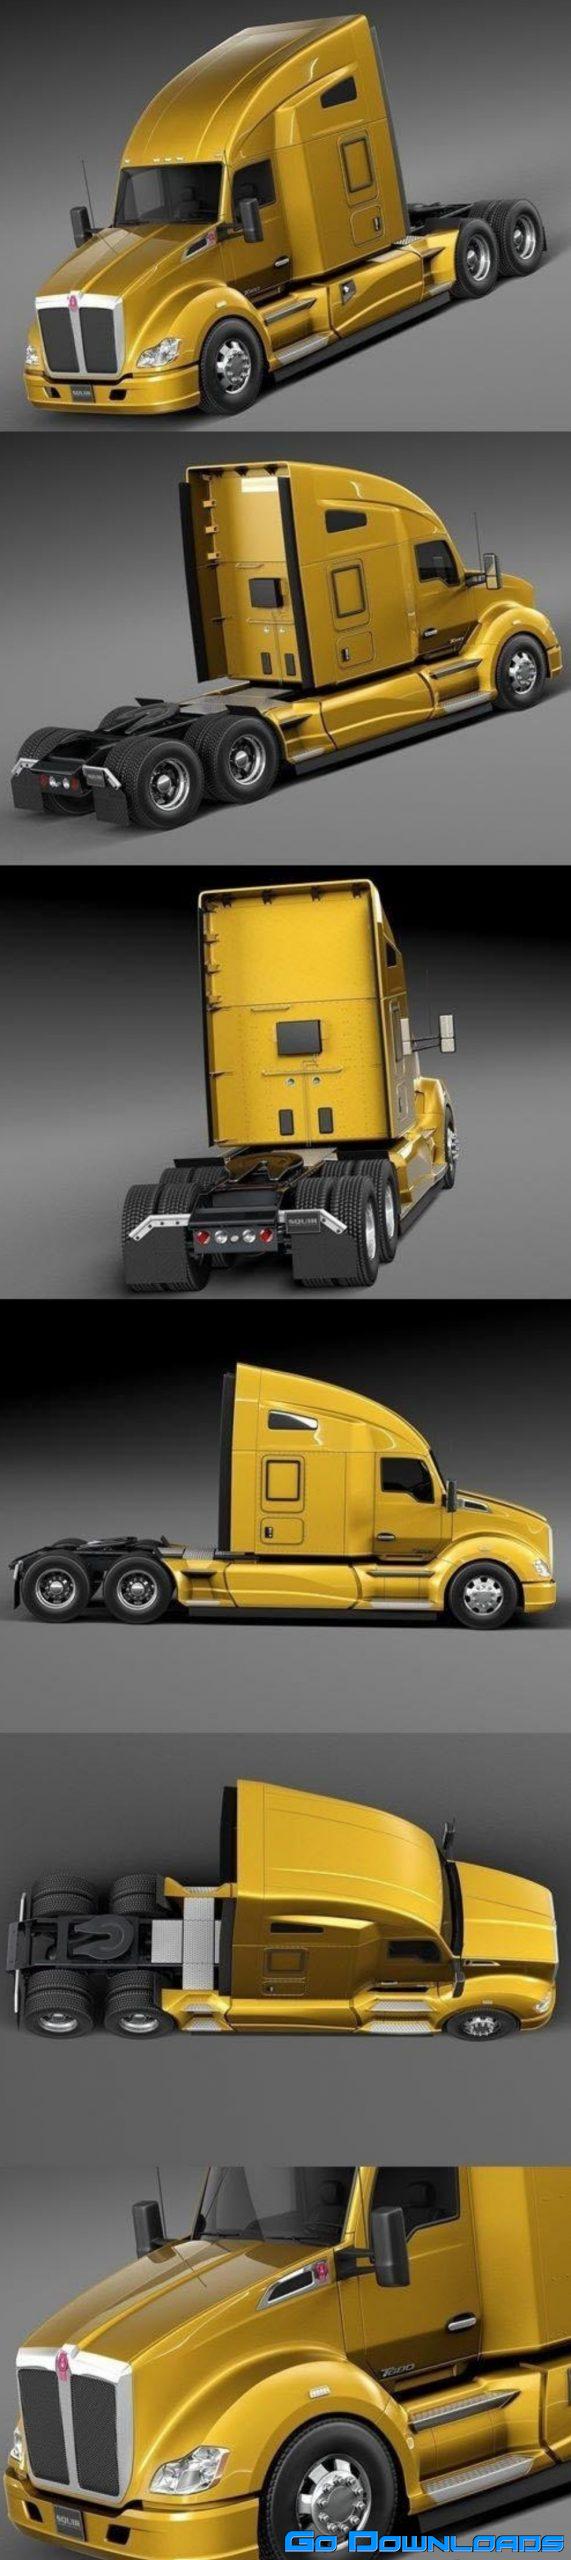 Kenworth T680 2015 Semi Truck 3D Model Free Download